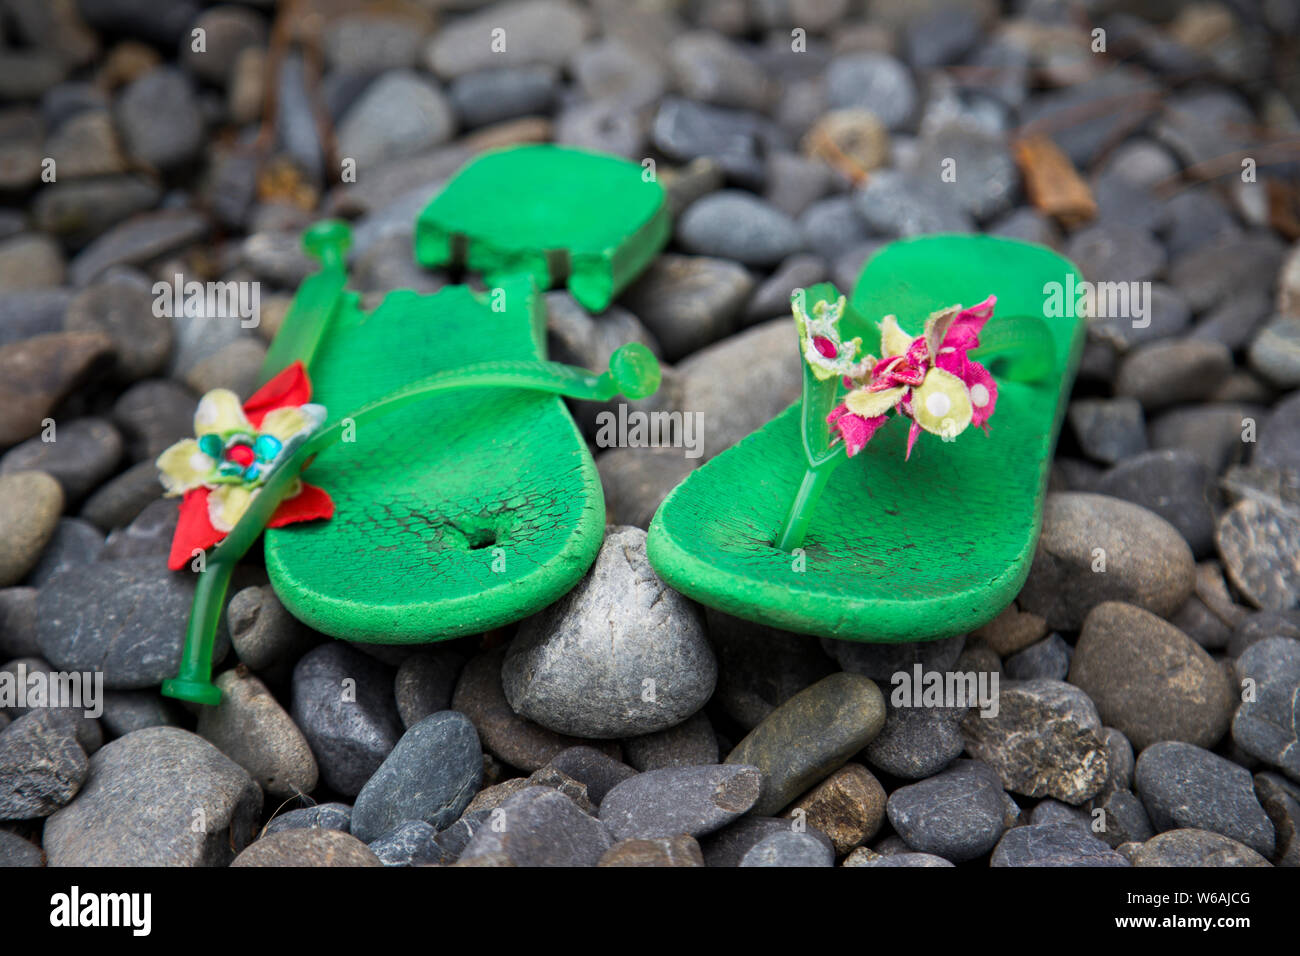 Ben amato jandals hanno finalmente rotto al punto da non poter essere indossato. Immagine mostra custom made jandals verde nel contesto su grigio pietre di fiume. Foto Stock